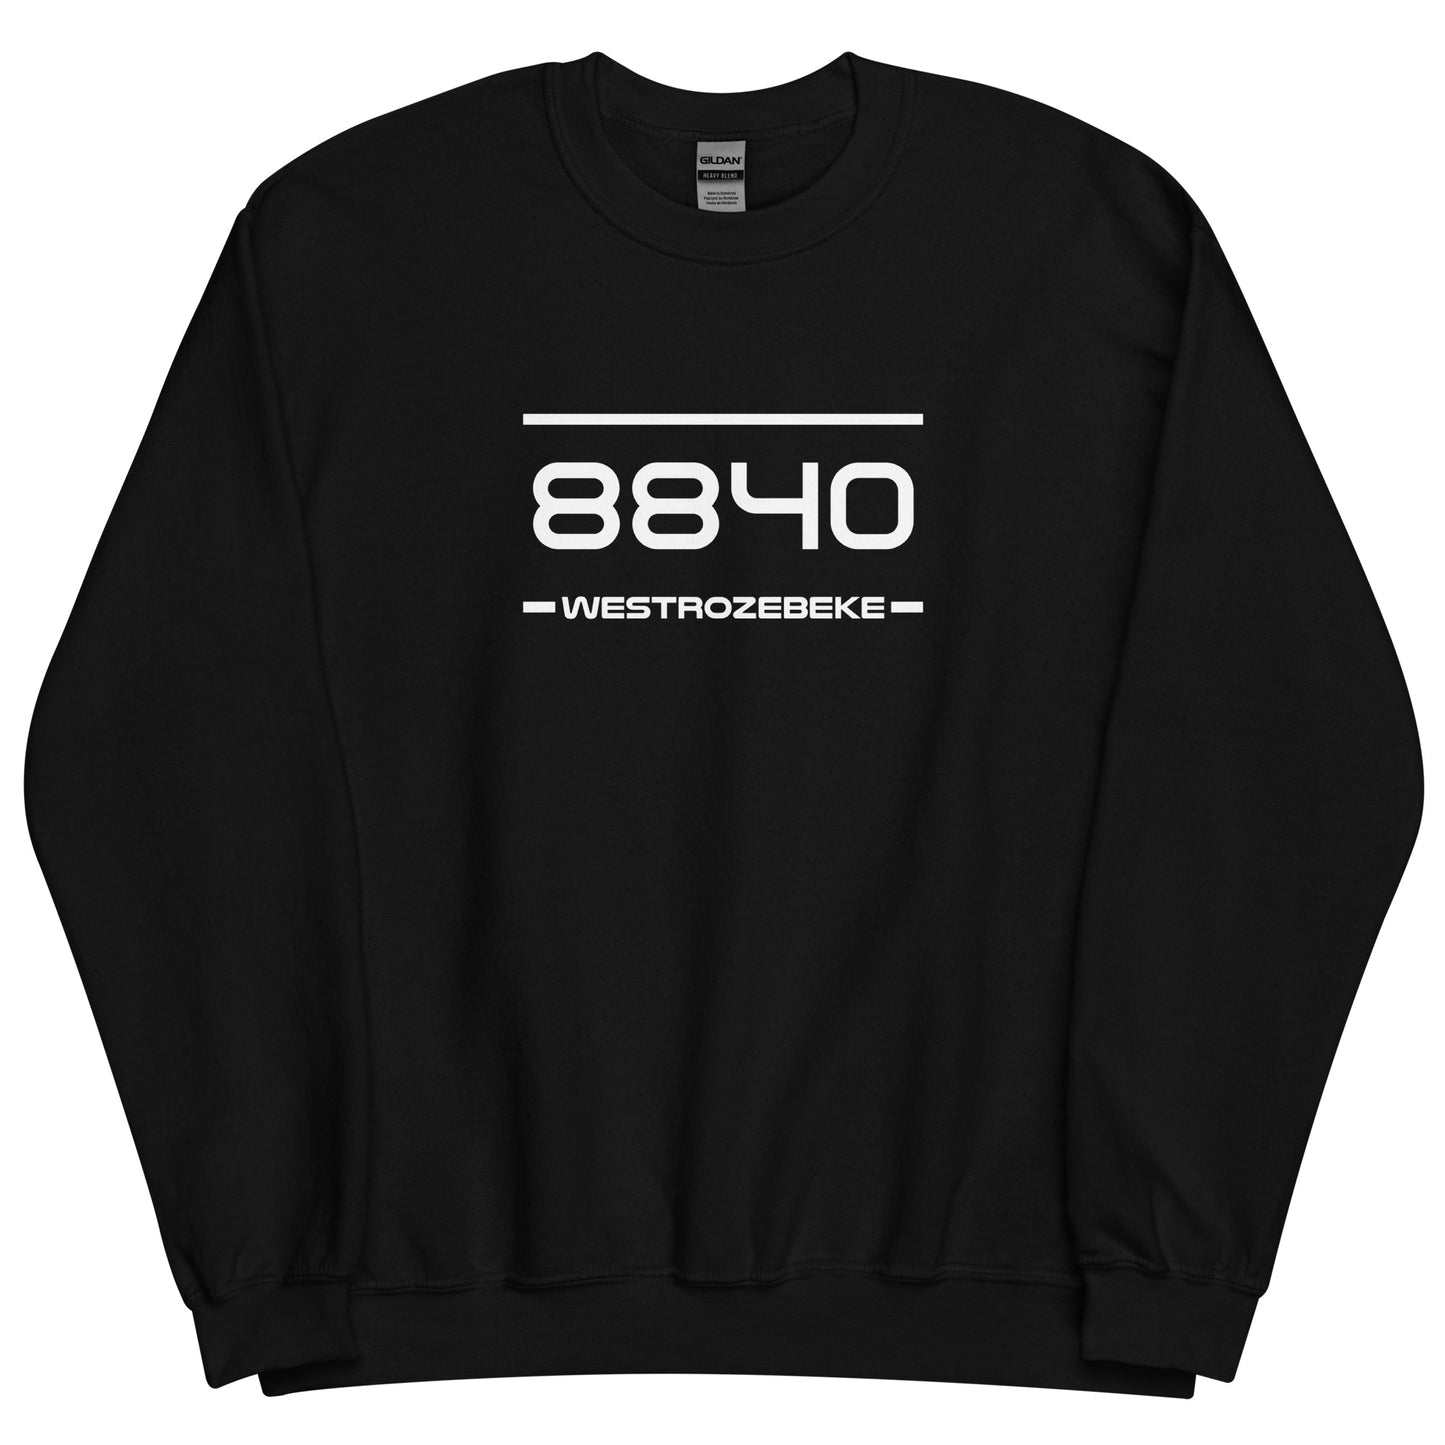 Sweater - 8840 - Westrozebeke (M/V)